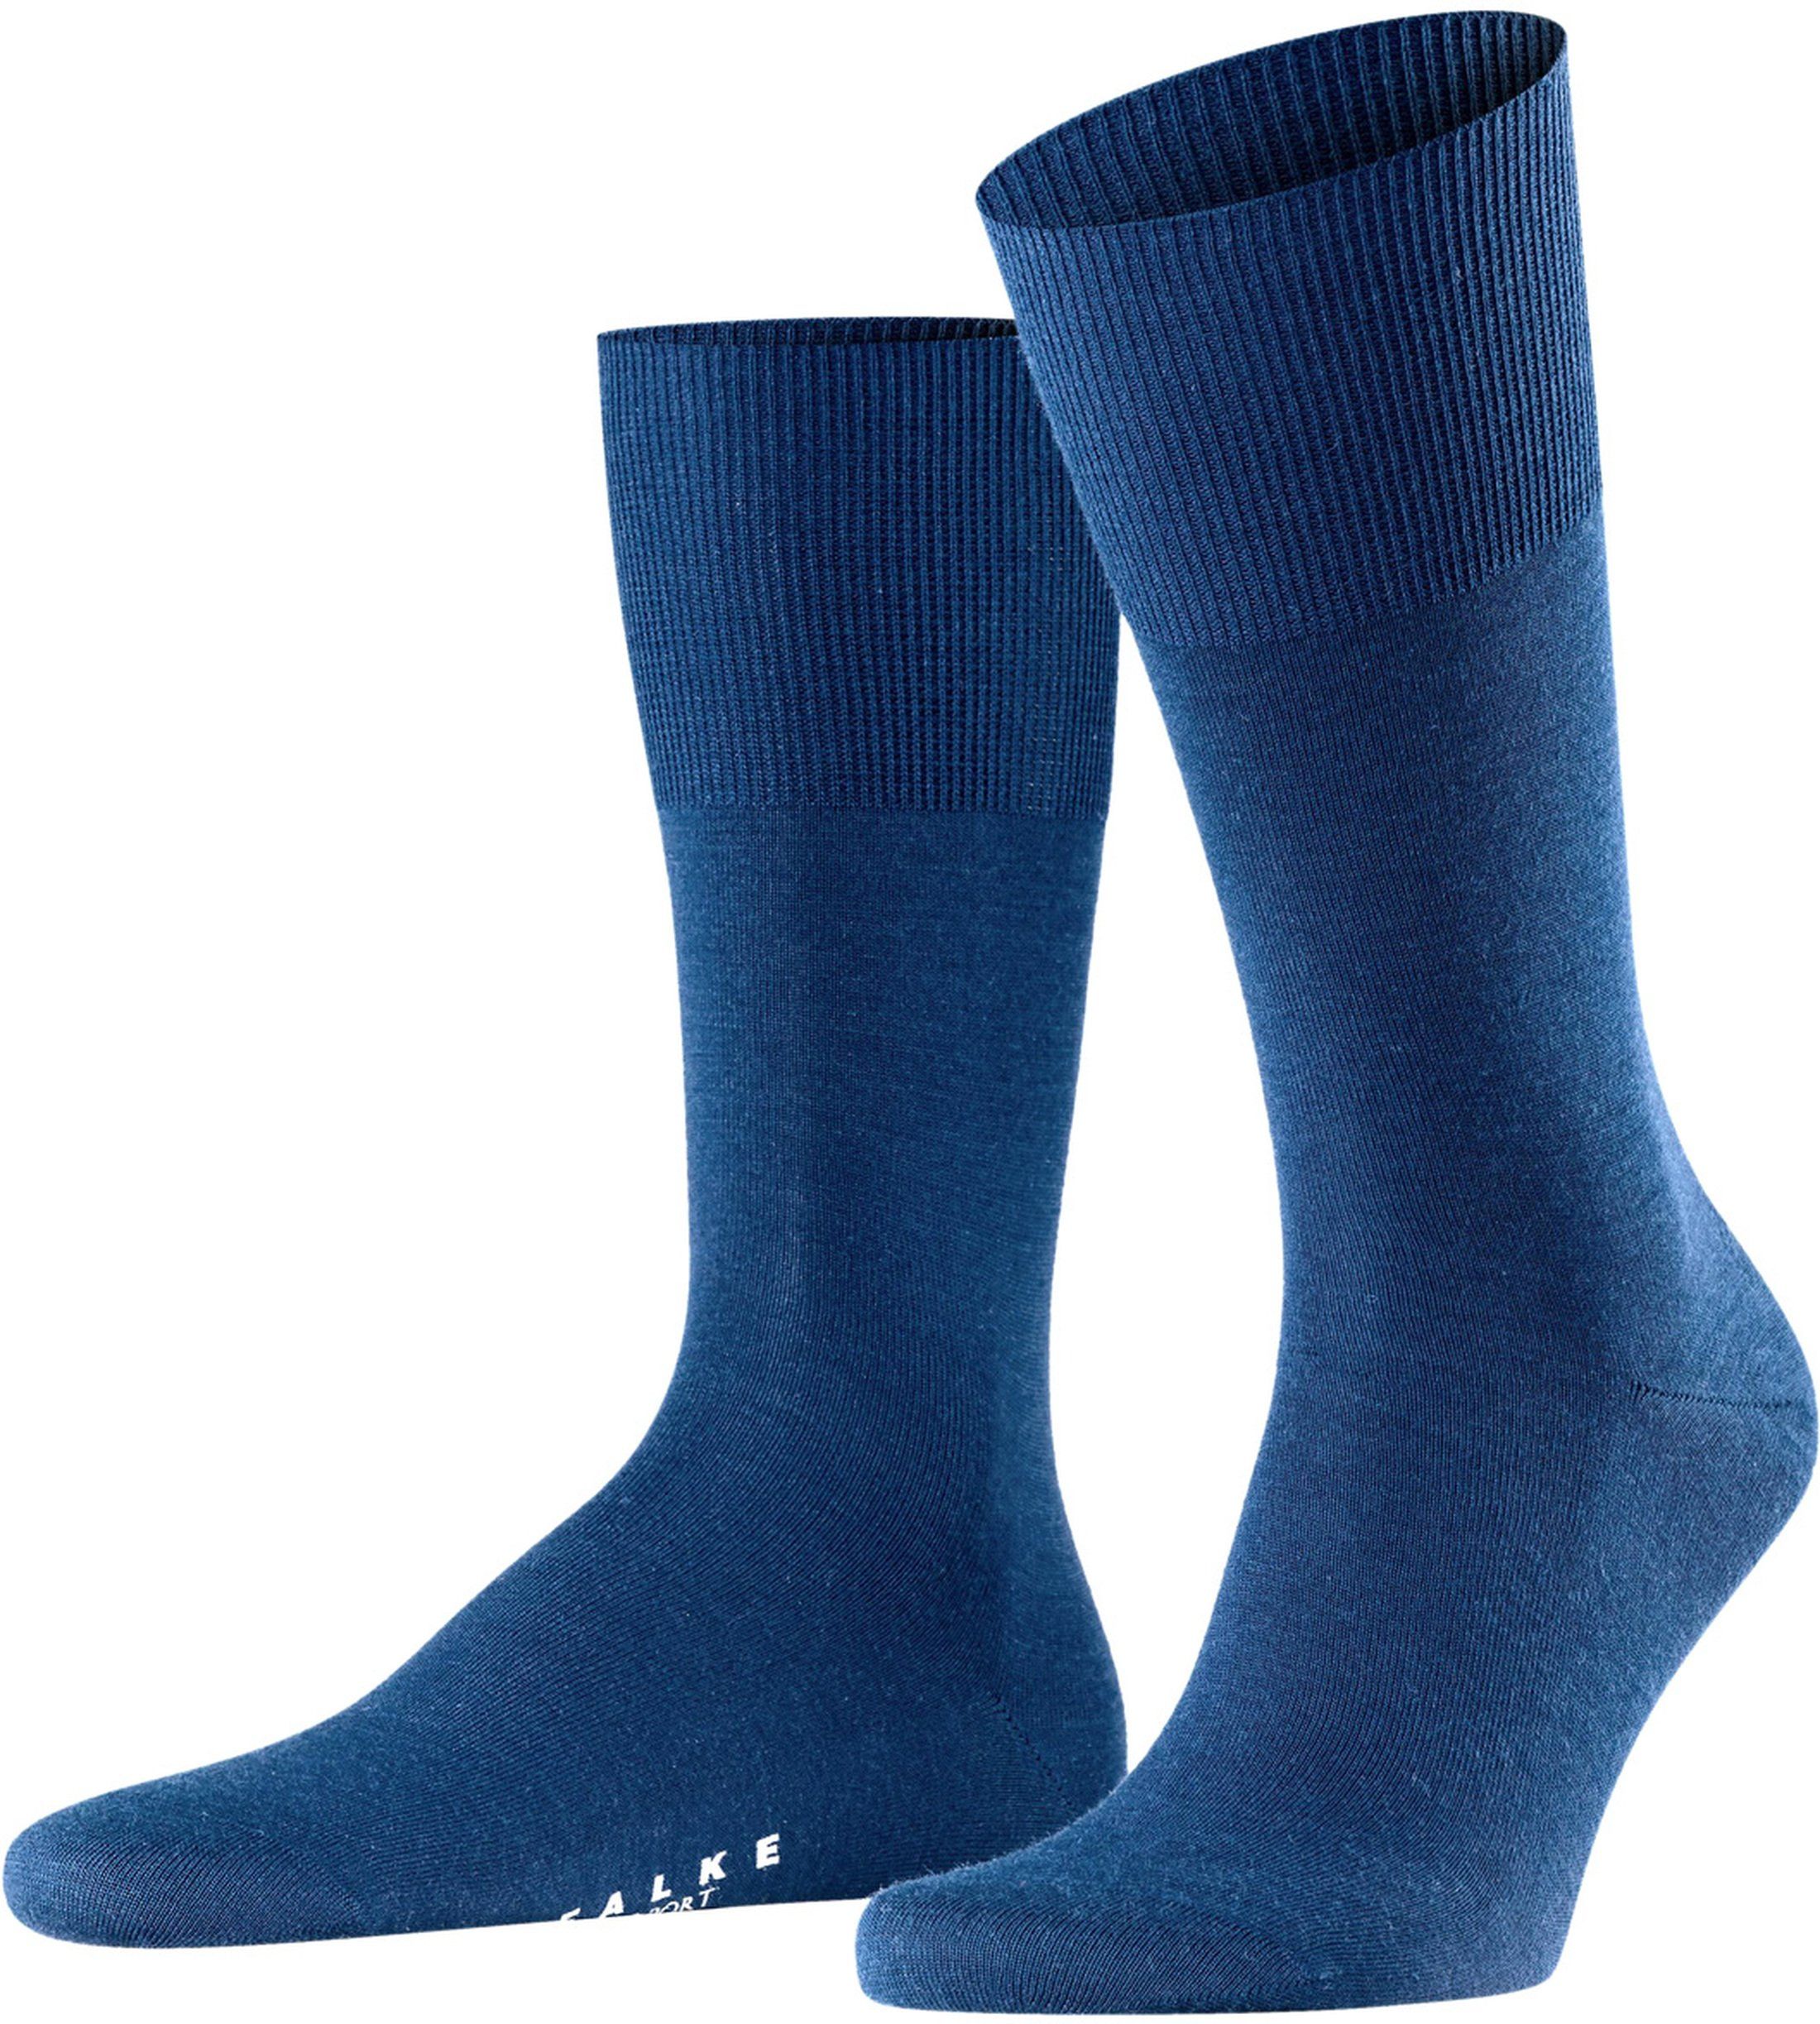 Falke Airport Sock Blue size 45-46